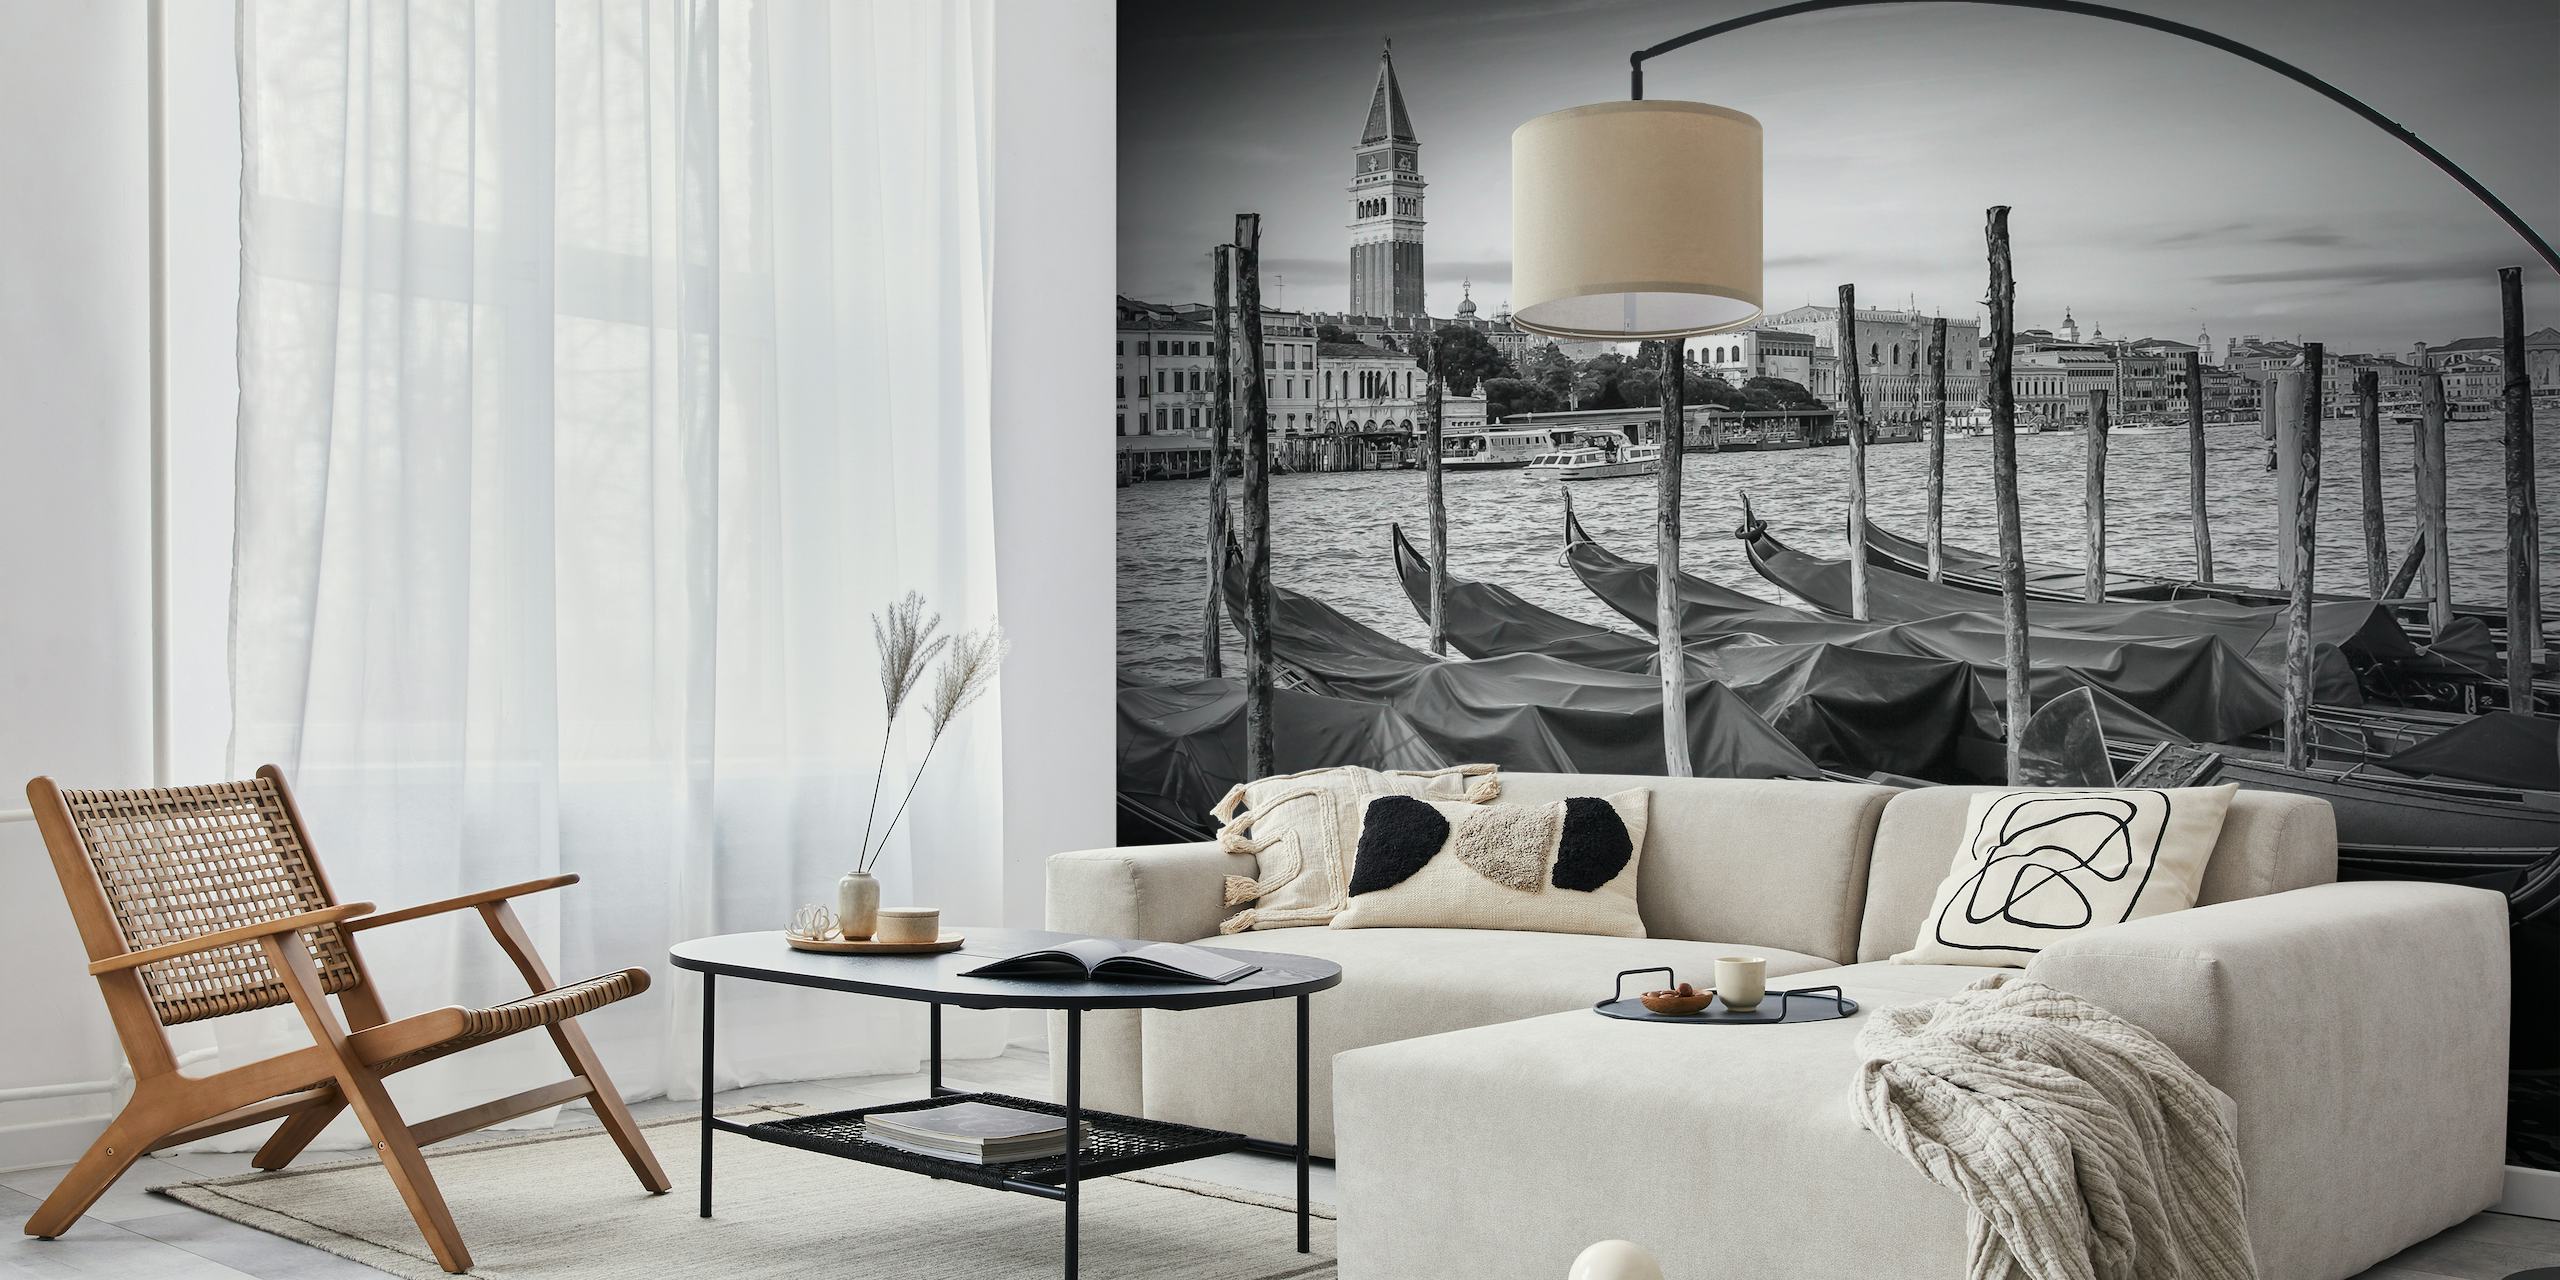 Czarno-biała fototapeta przedstawiająca Canal Grande w Wenecji z gondolami i historyczną architekturą